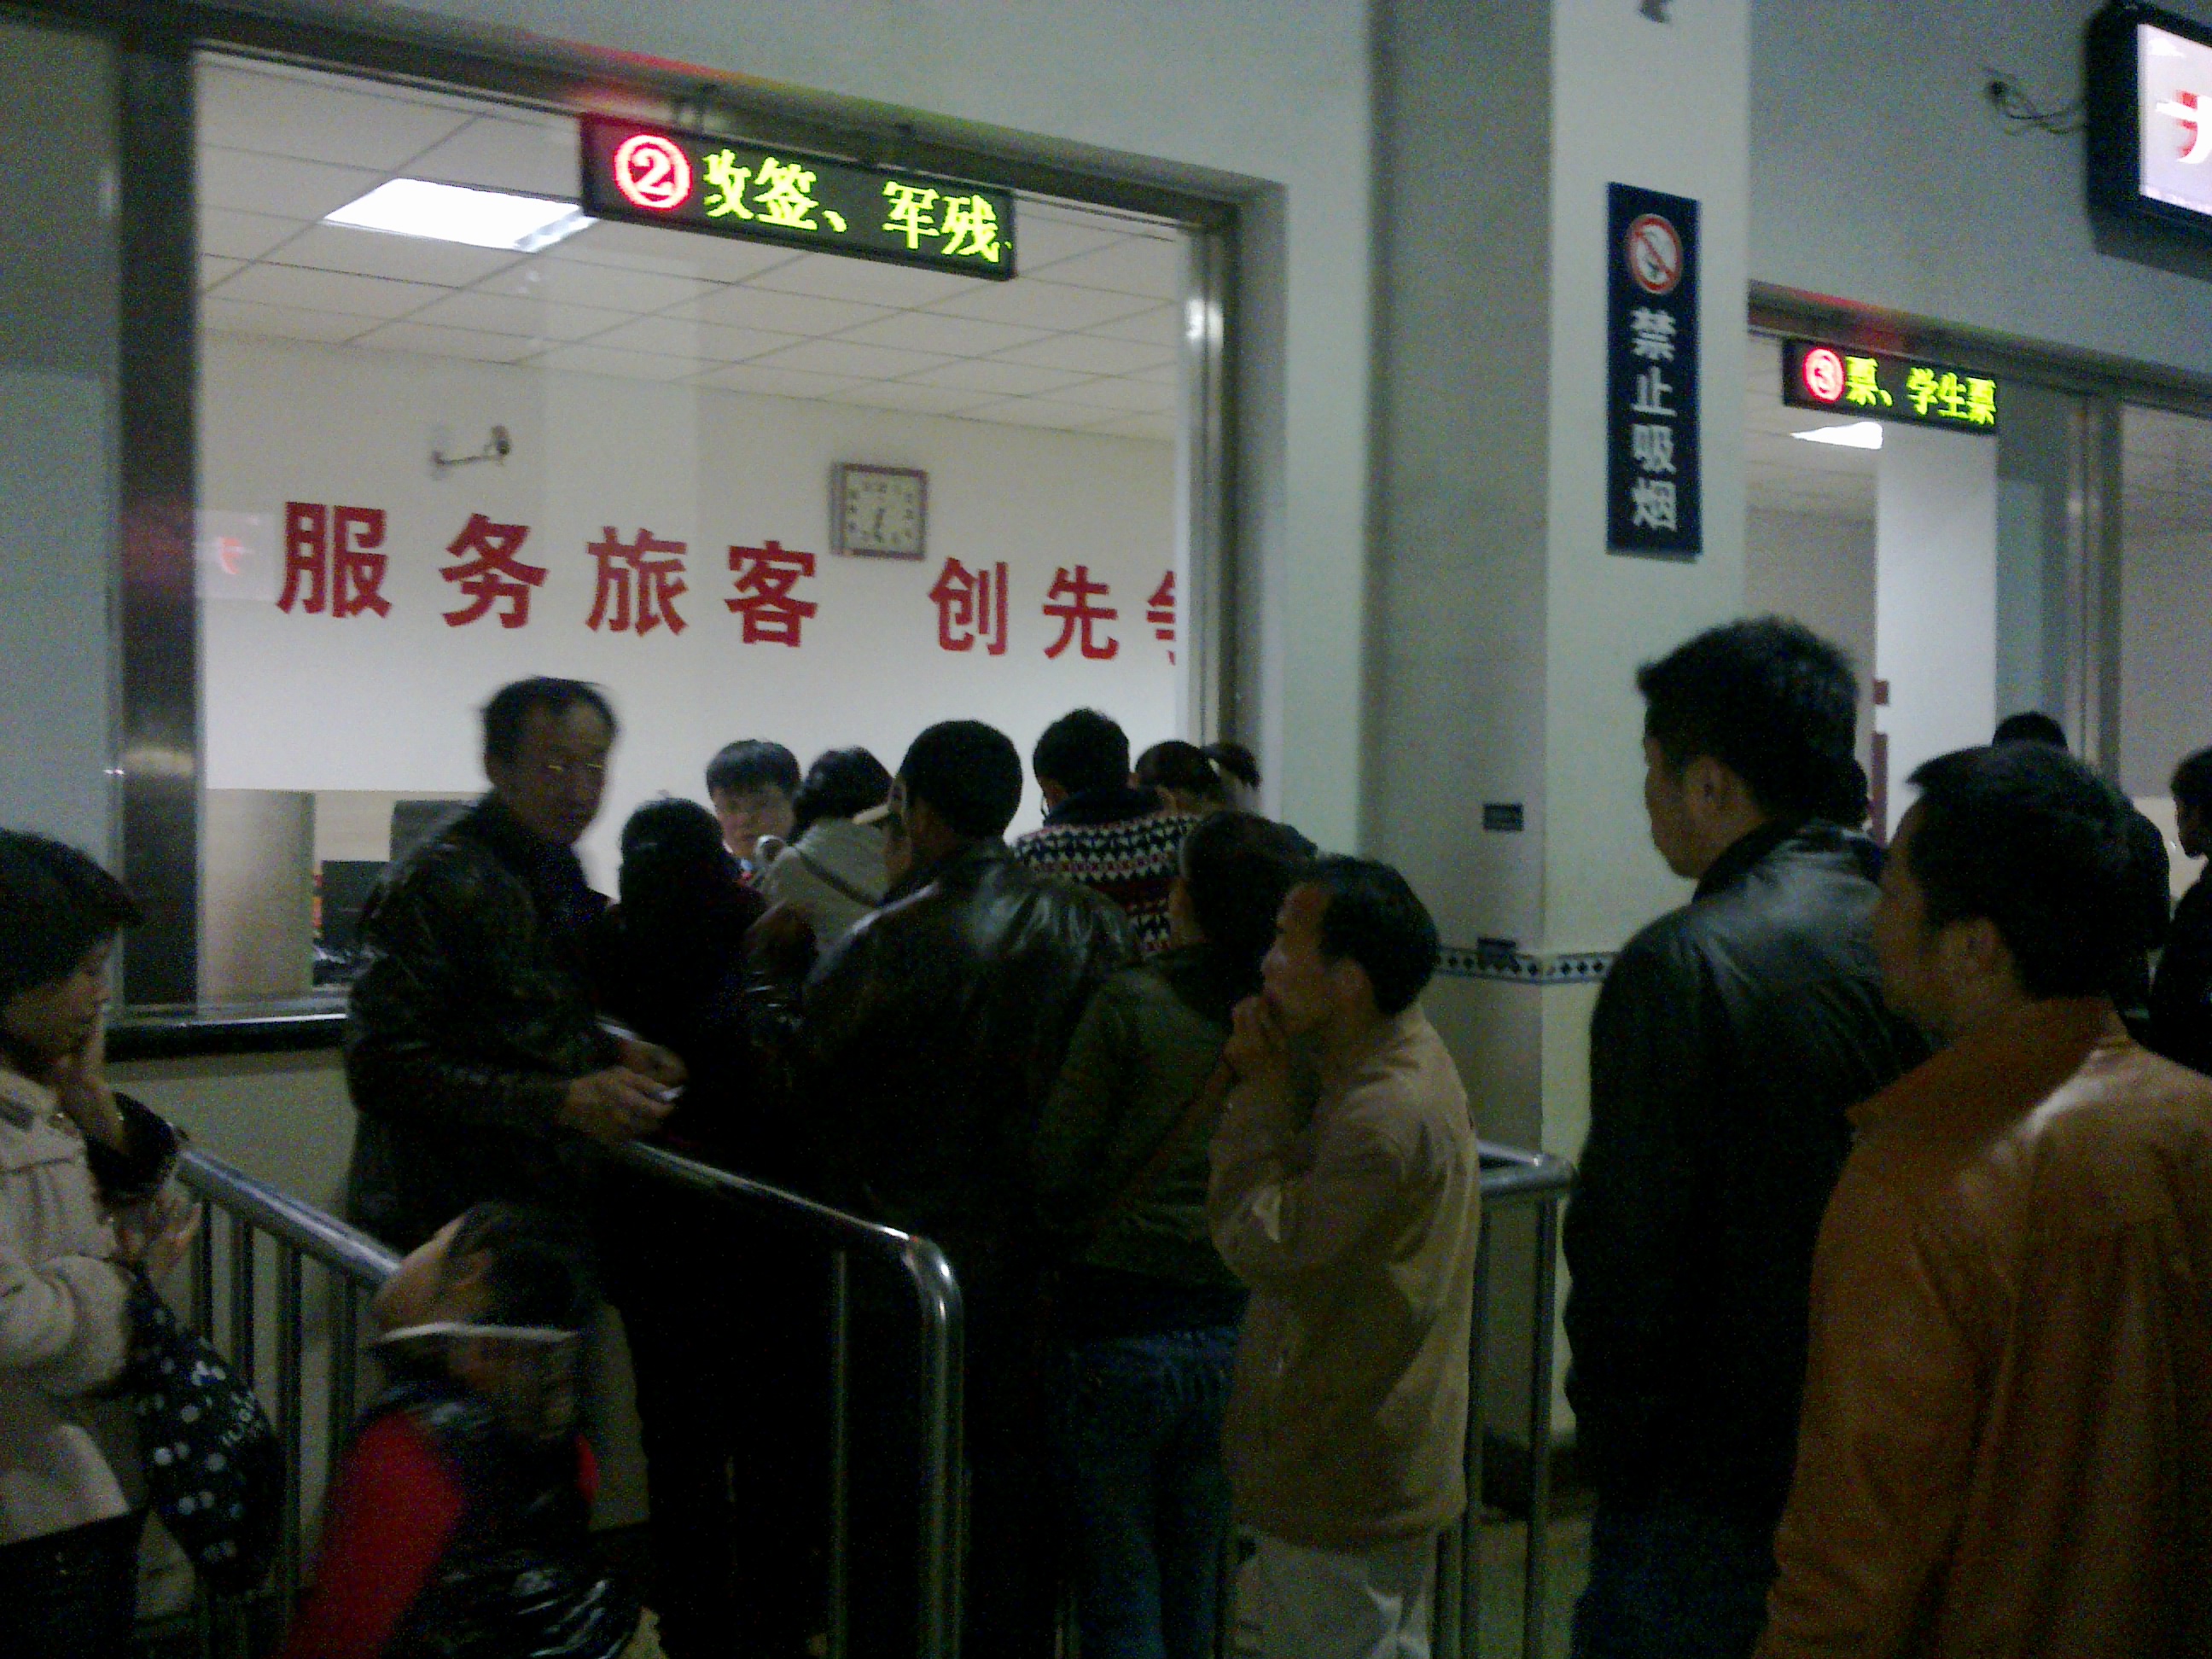 Neues Onlinebuchungssystem der chinesischen Bahn steht in der Kritik- Gut gewollt ist nicht gleich gut gemacht